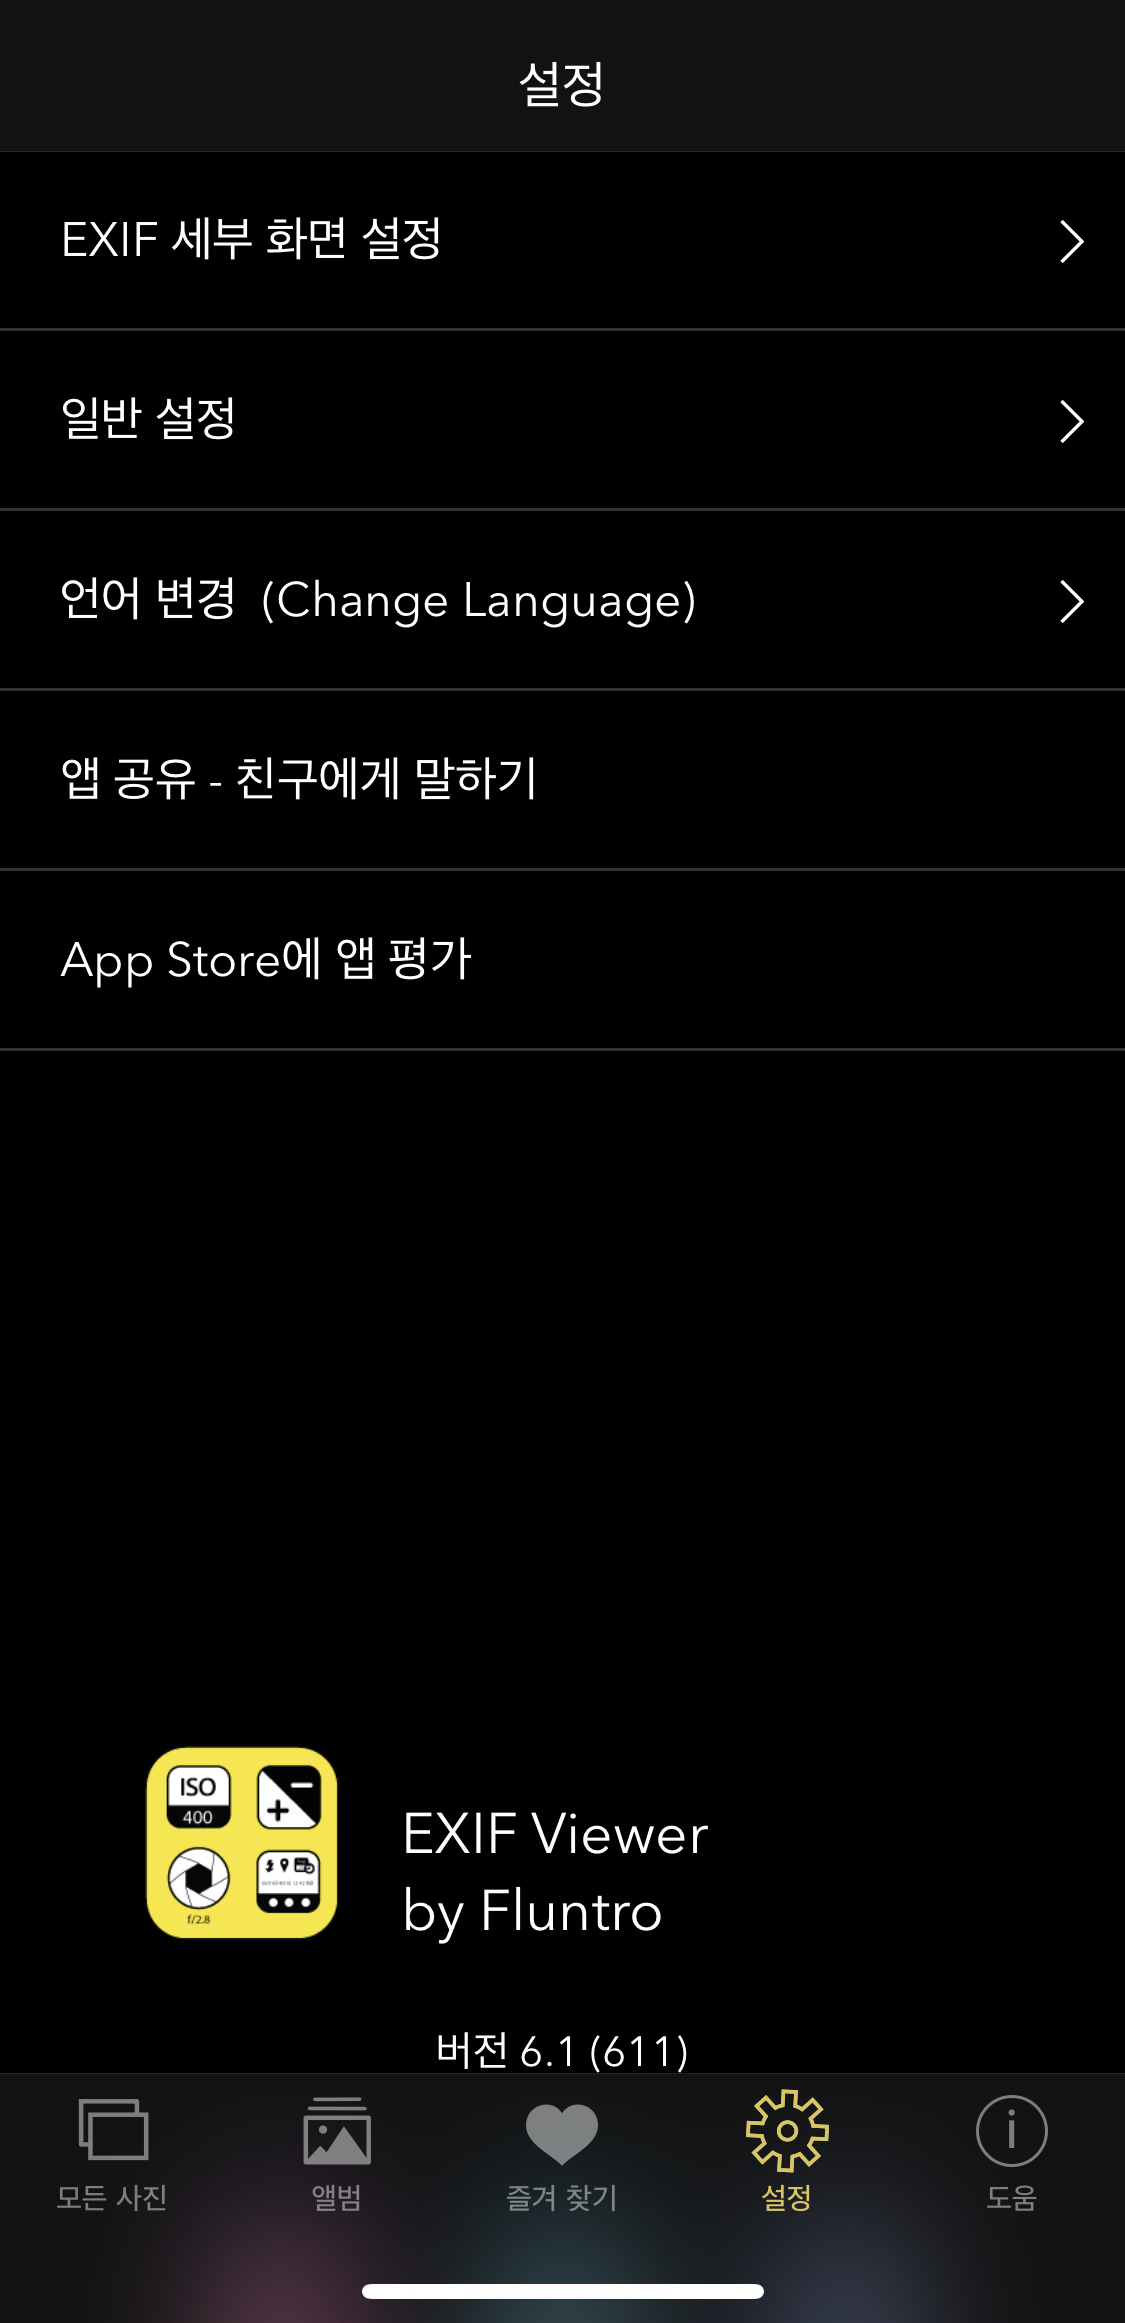 Exif viewer - 앱 설정